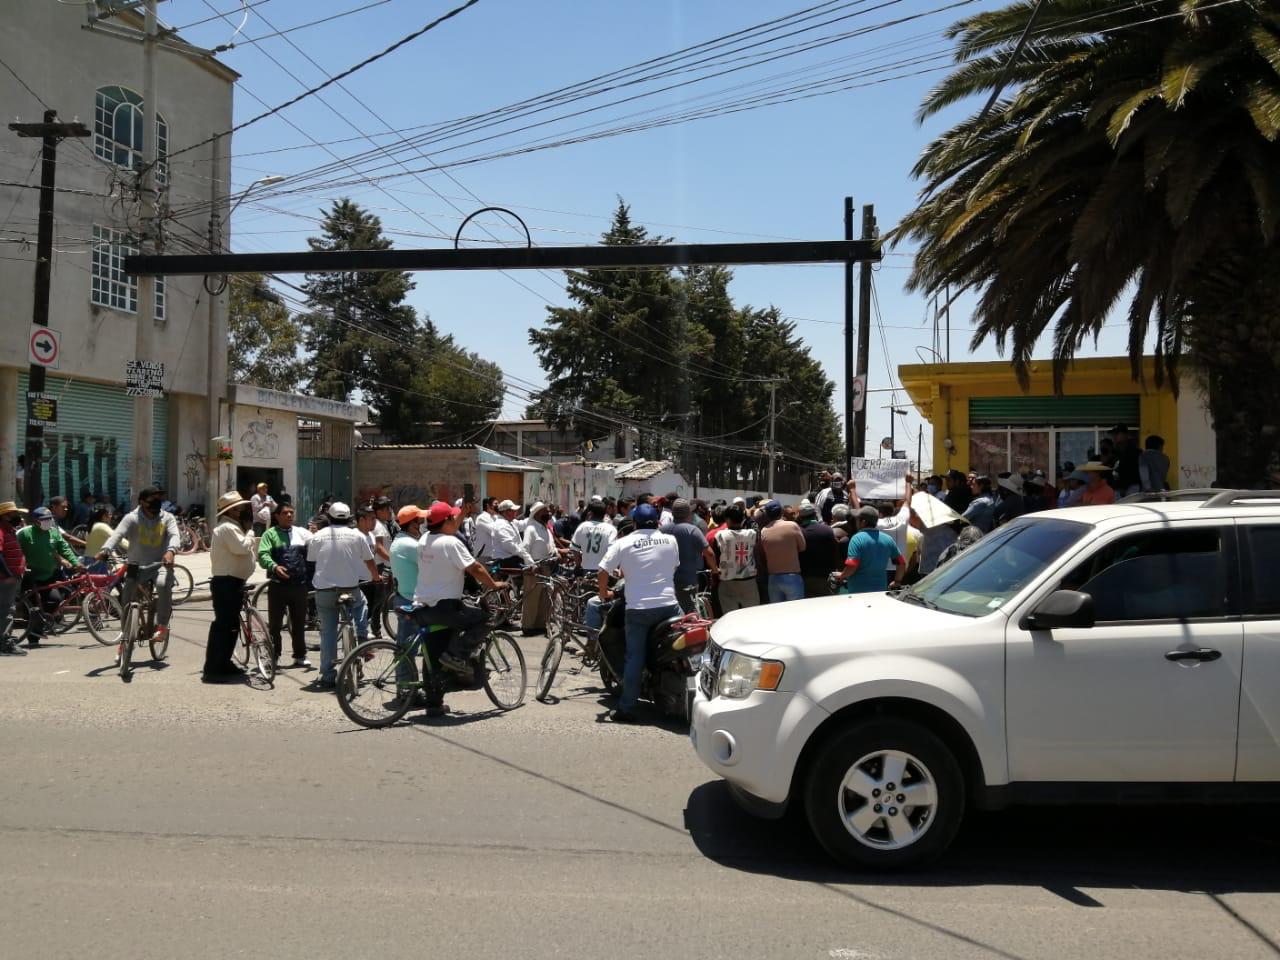 Pese a desmentir noticias falsas, en S. C. Huichochitlán piden cancelar las sanitizaciones por “esparcir covid-19”